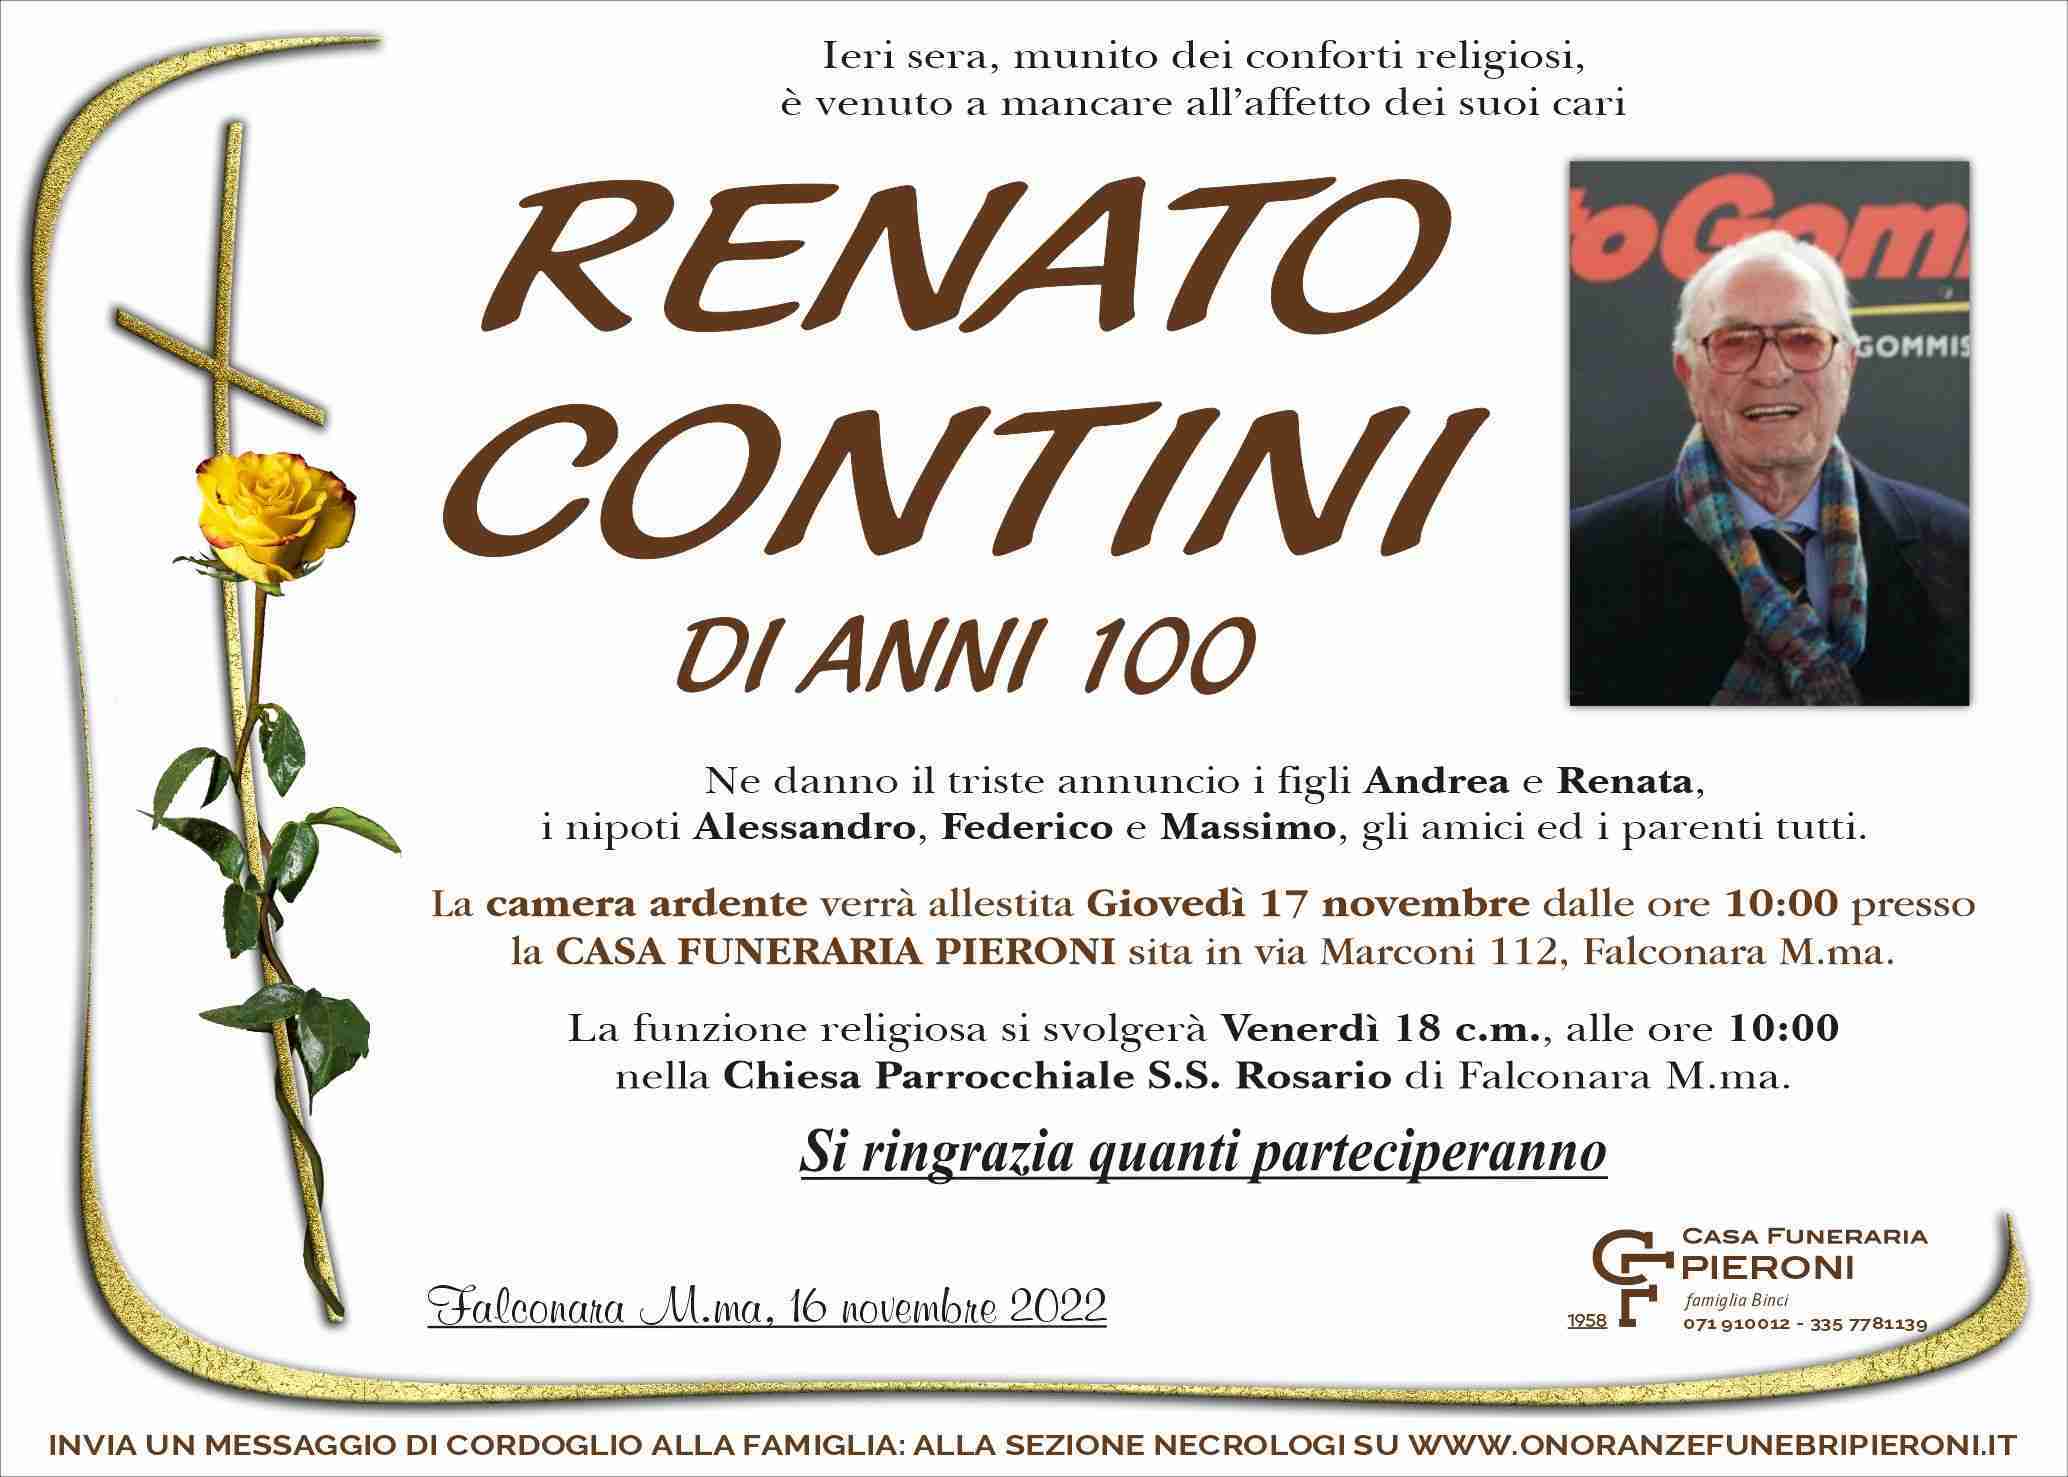 Renato Contini